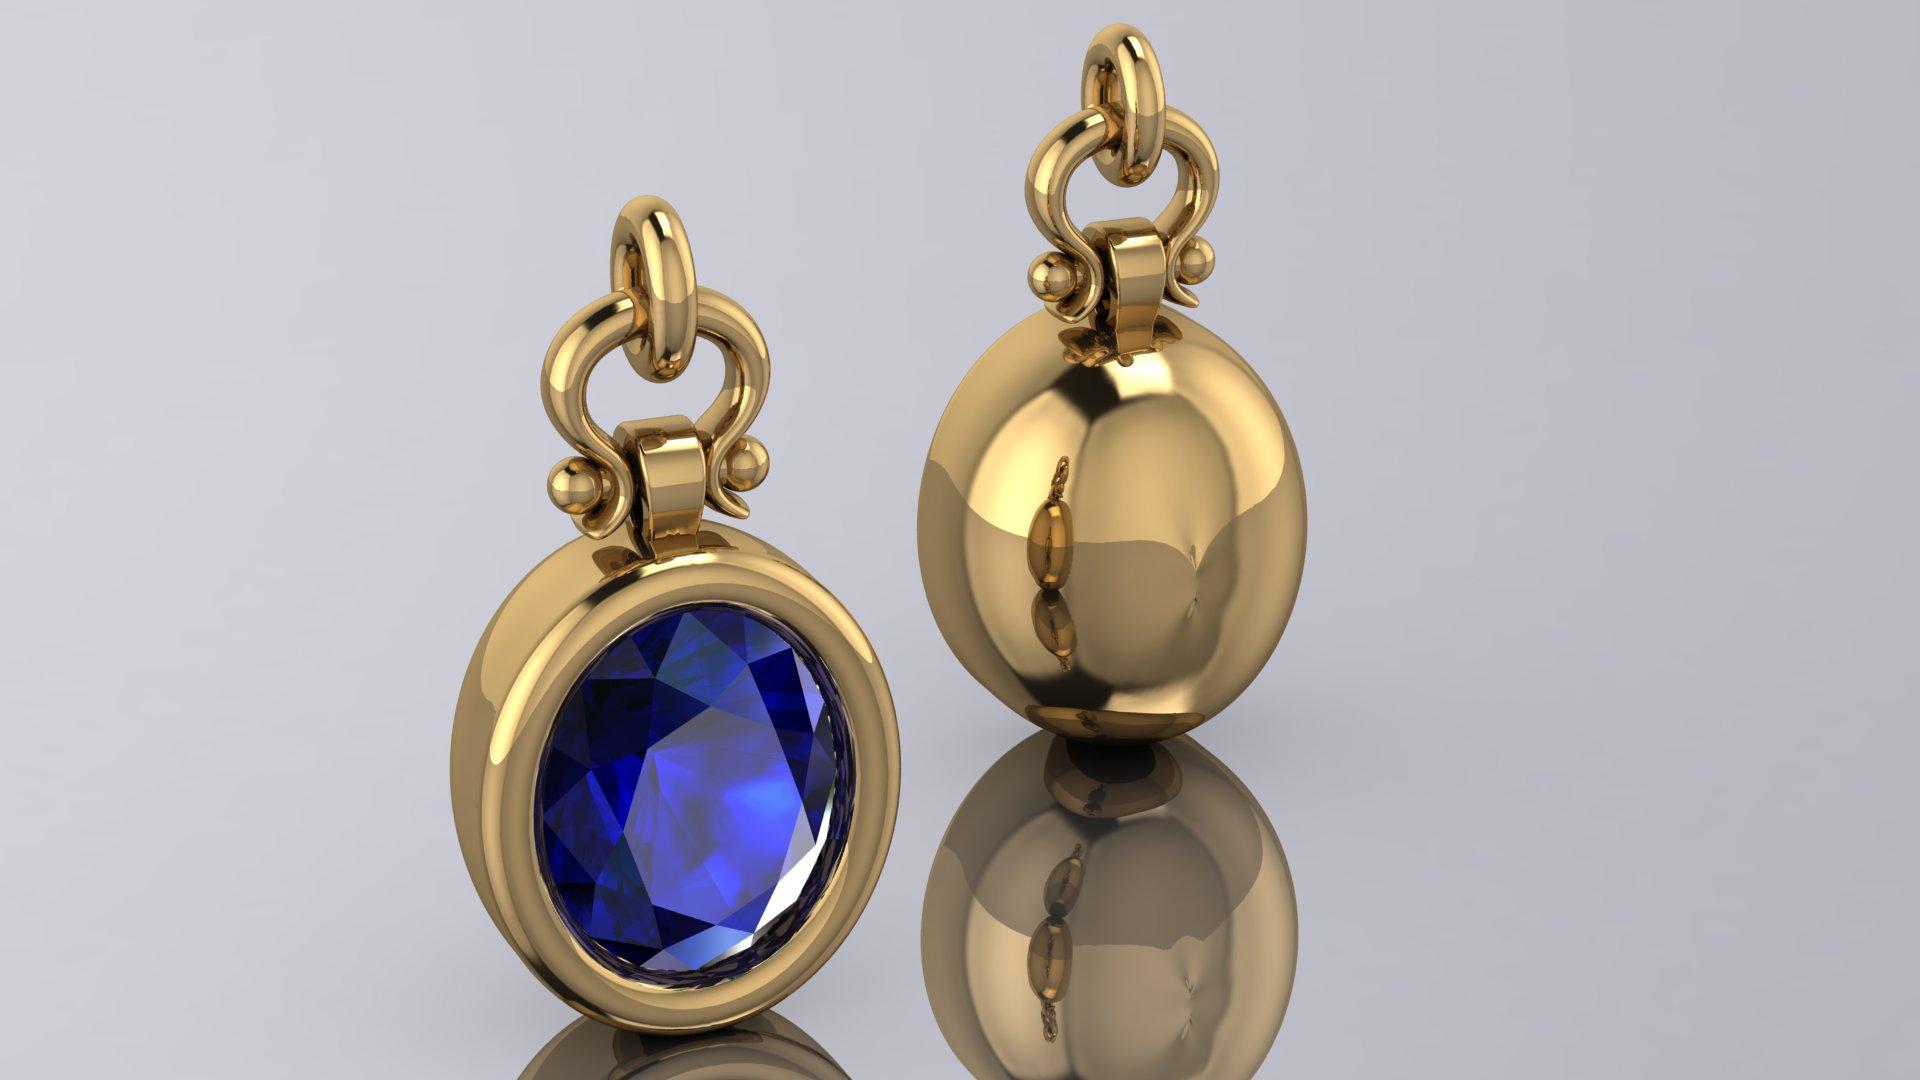 Oval Cut Berberyn Certified 4.12 Carat Oval Blue Sapphire Pendant Necklace in 18k For Sale